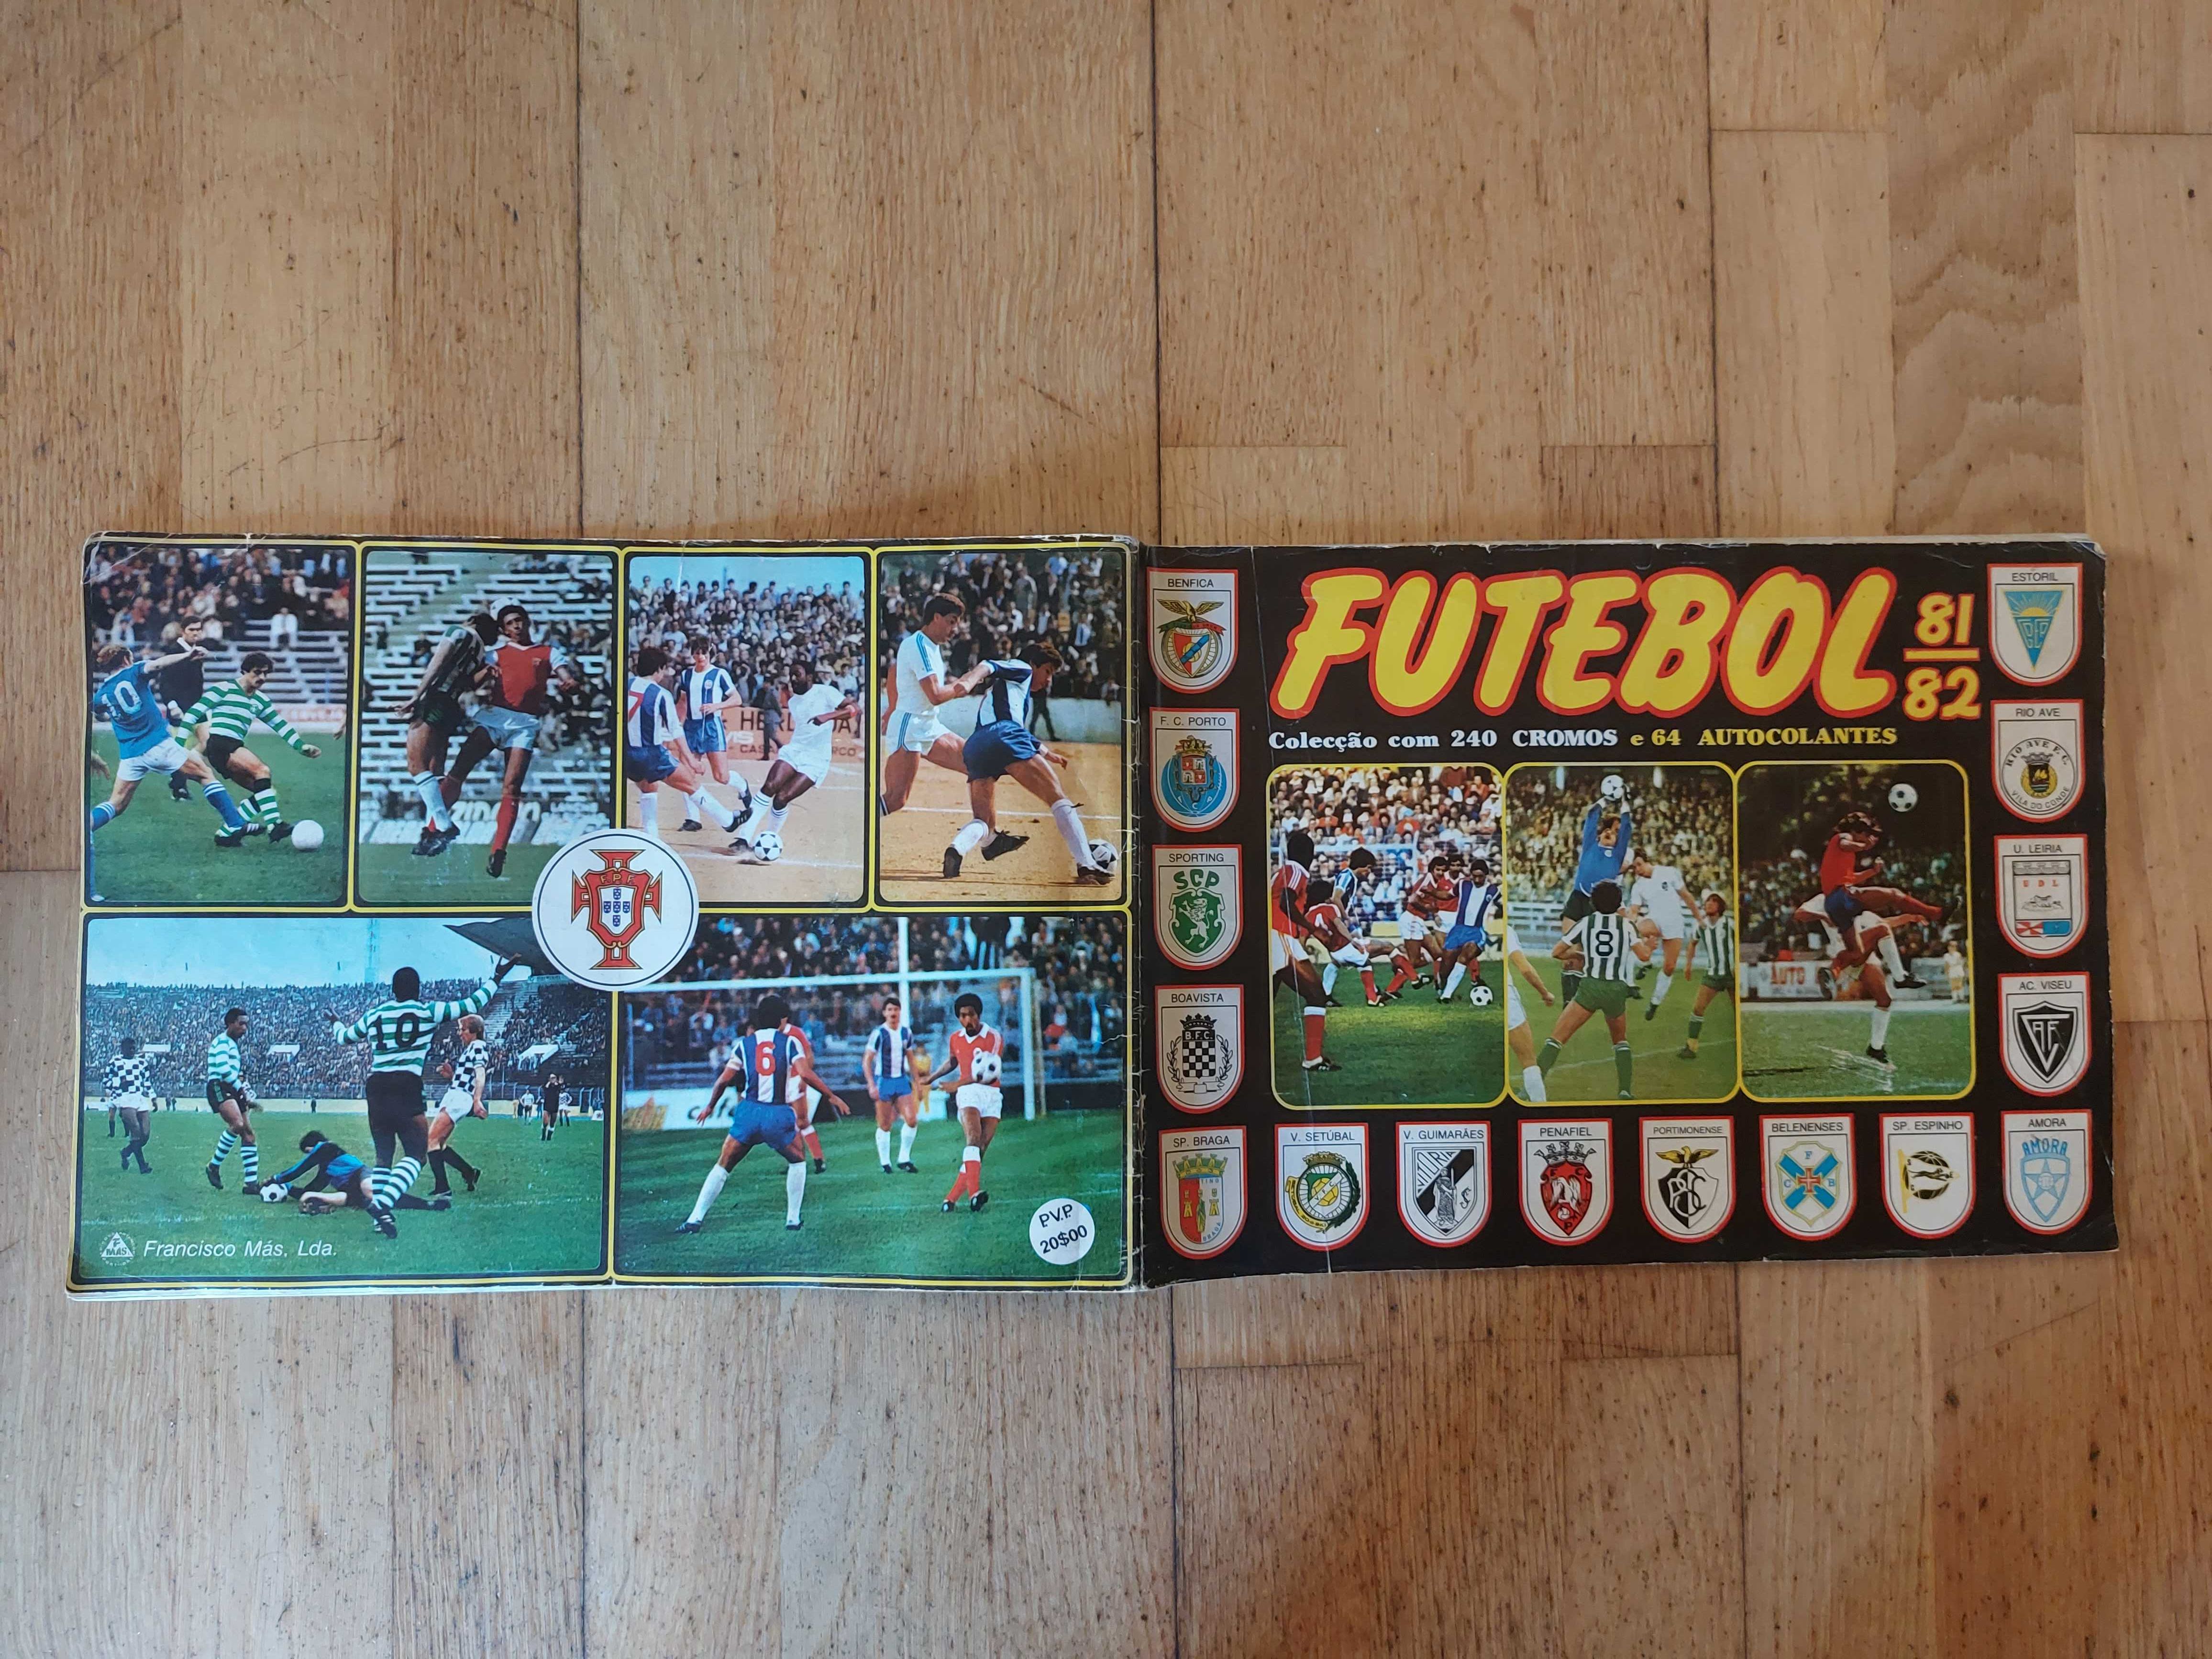 Caderneta de cromos "Futebol 81-82" - Completa